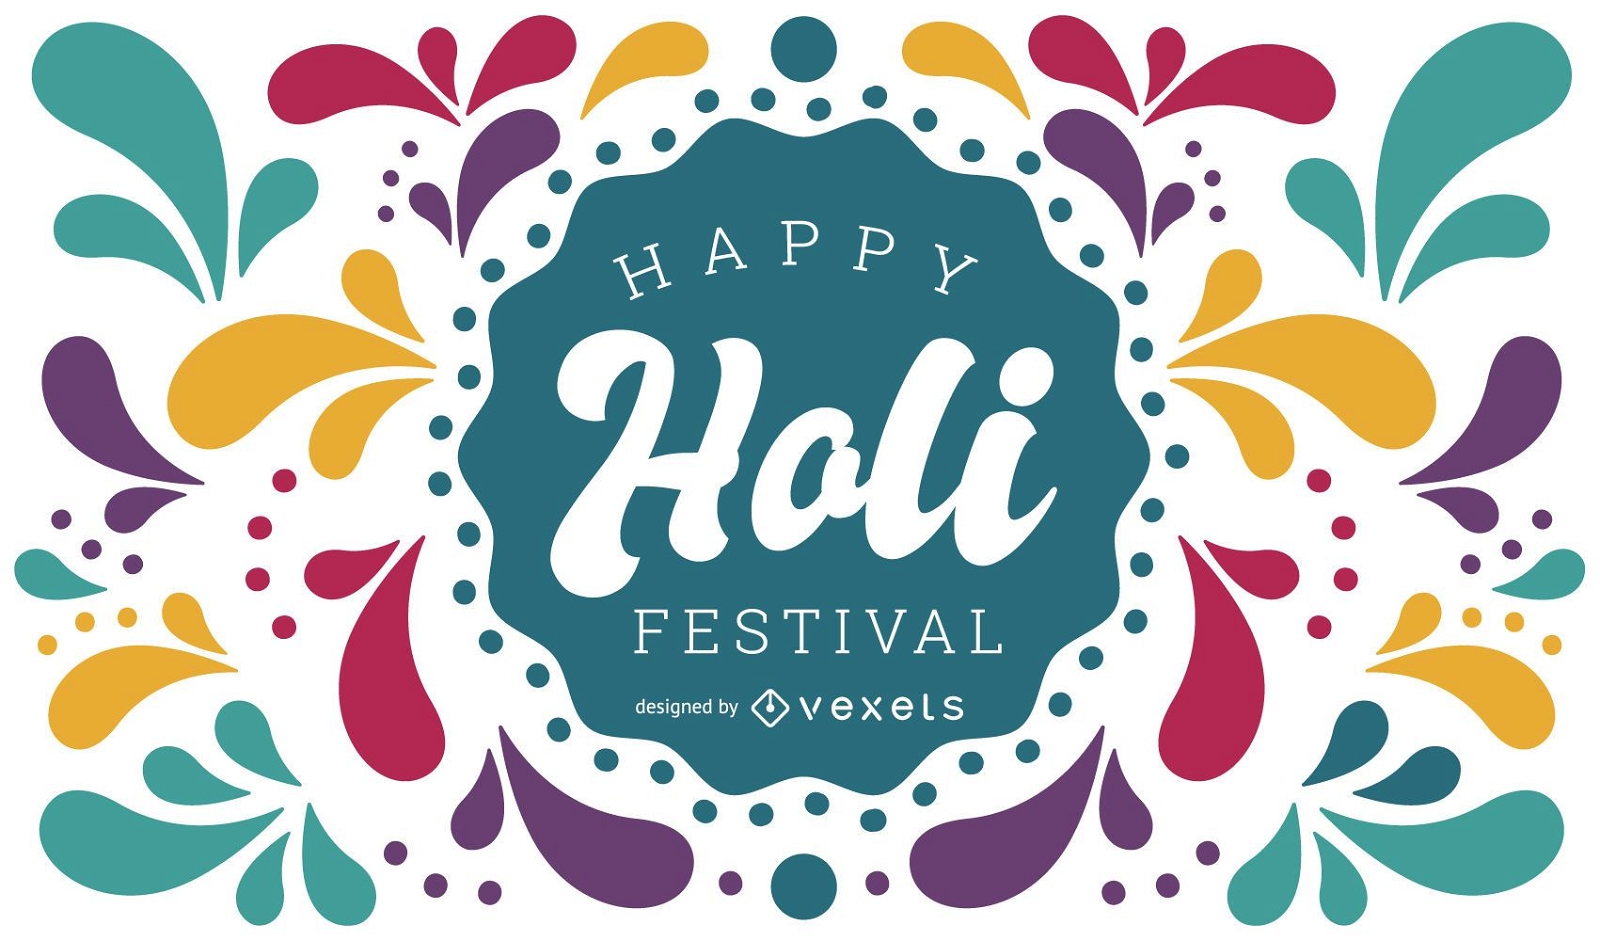 Dise?o Happy Holi Festival